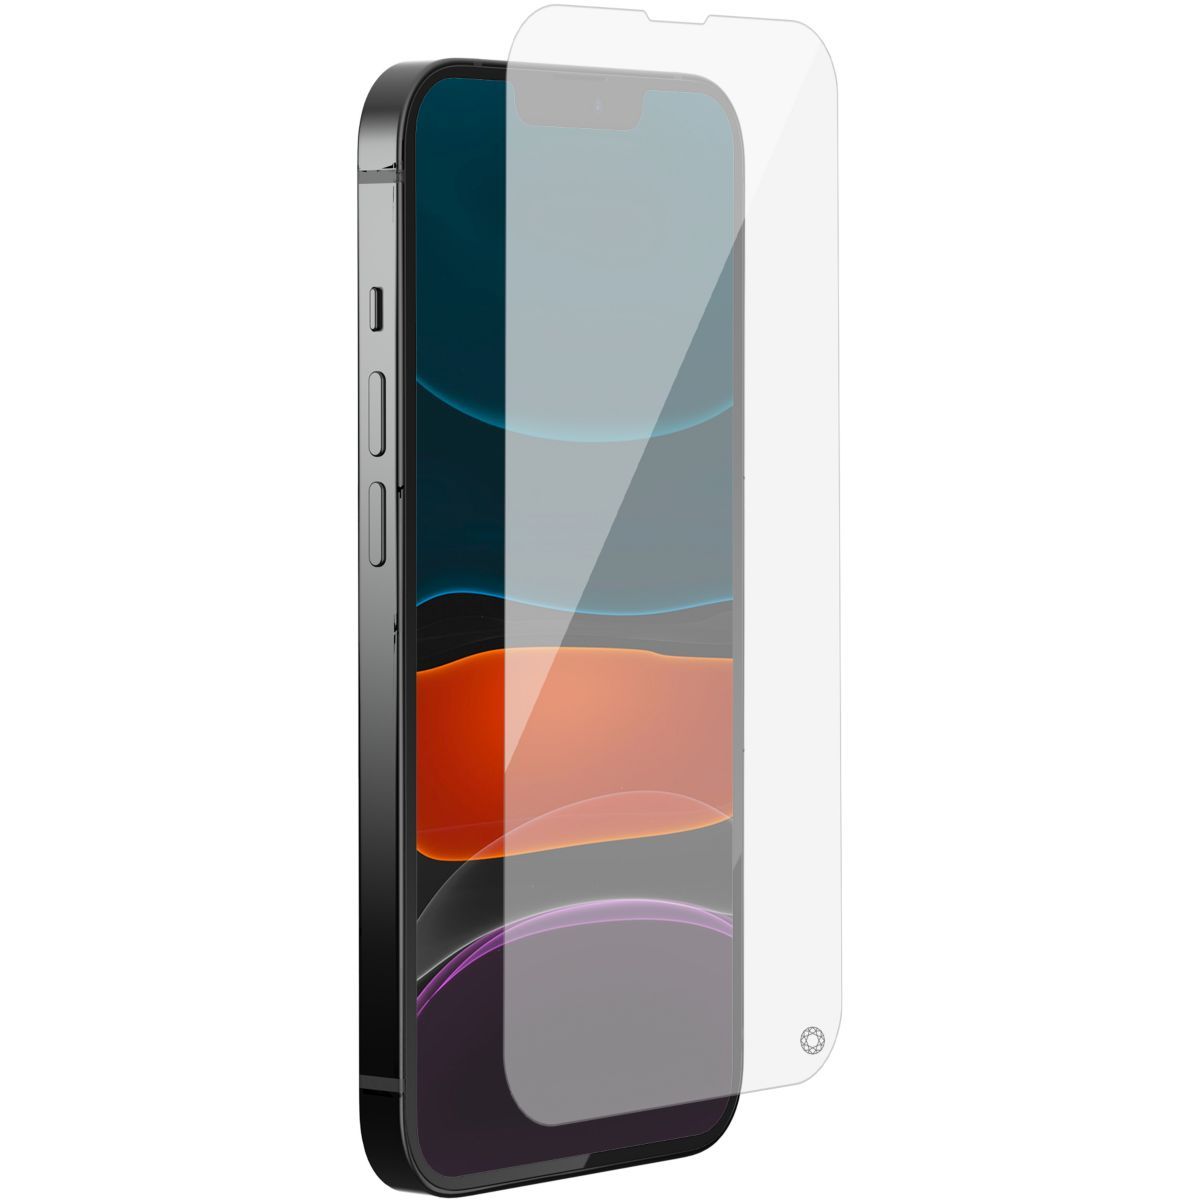 Protège écran FORCE GLASS iPhone 8 verre trempé original 360°